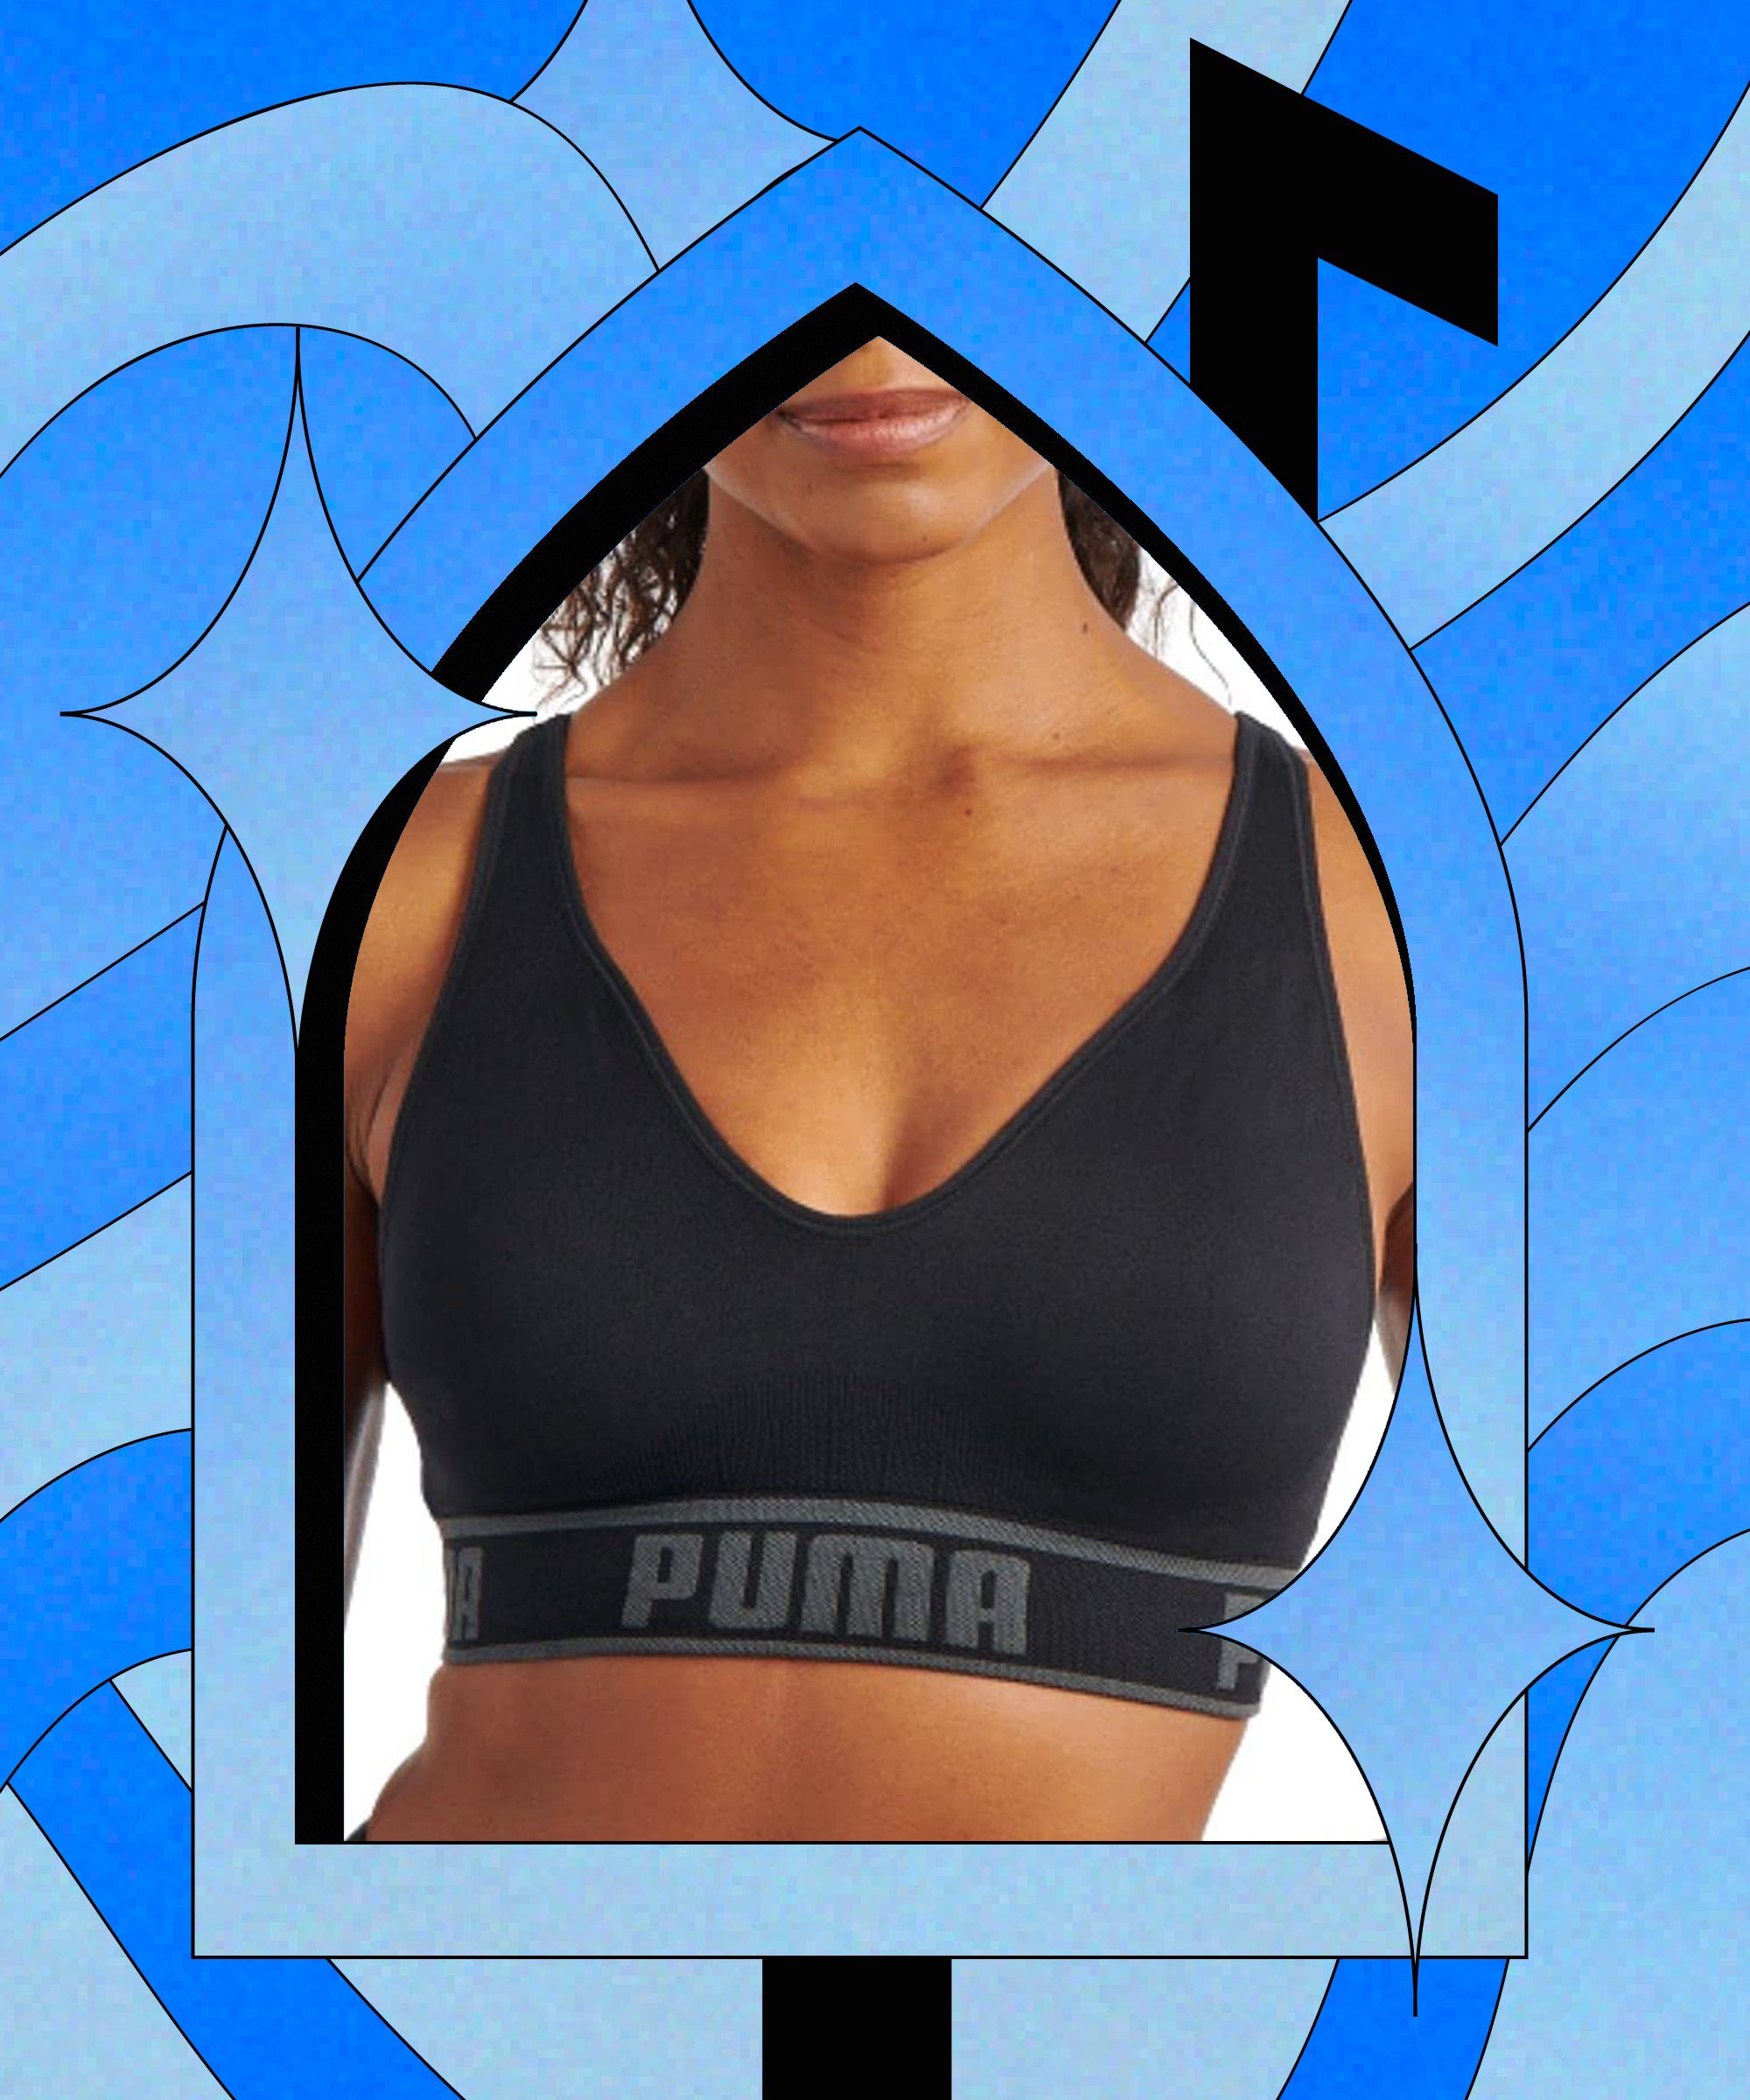 Puma Women's Sports Bras & Underwear